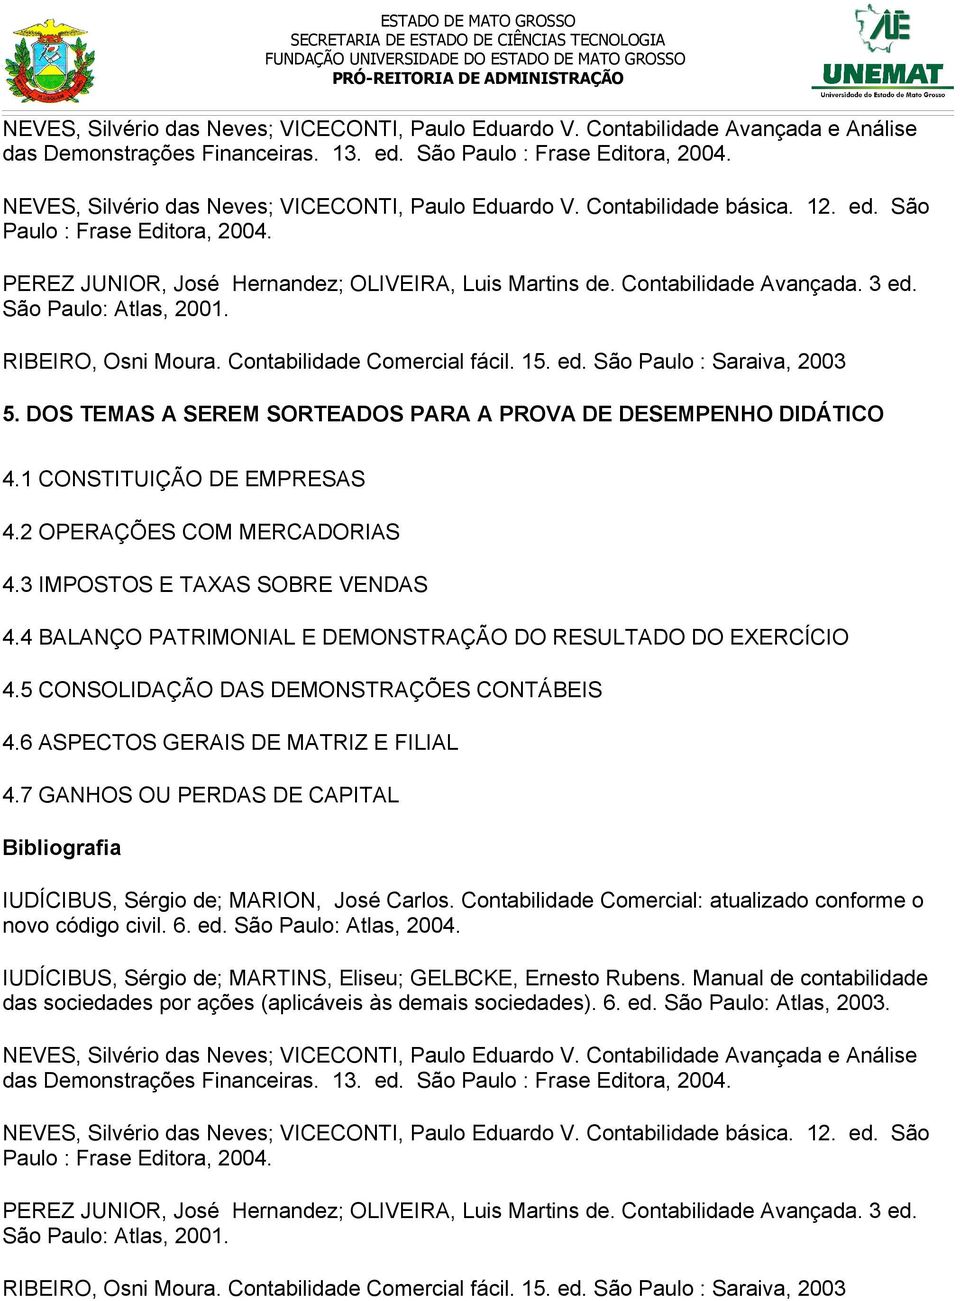 3 ed. São Paulo: Atlas, 2001. RIBEIRO, Osni Moura. Contabilidade Comercial fácil. 15. ed. São Paulo : Saraiva, 2003 5. DOS TEMAS A SEREM SORTEADOS PARA A PROVA DE DESEMPENHO DIDÁTICO 4.